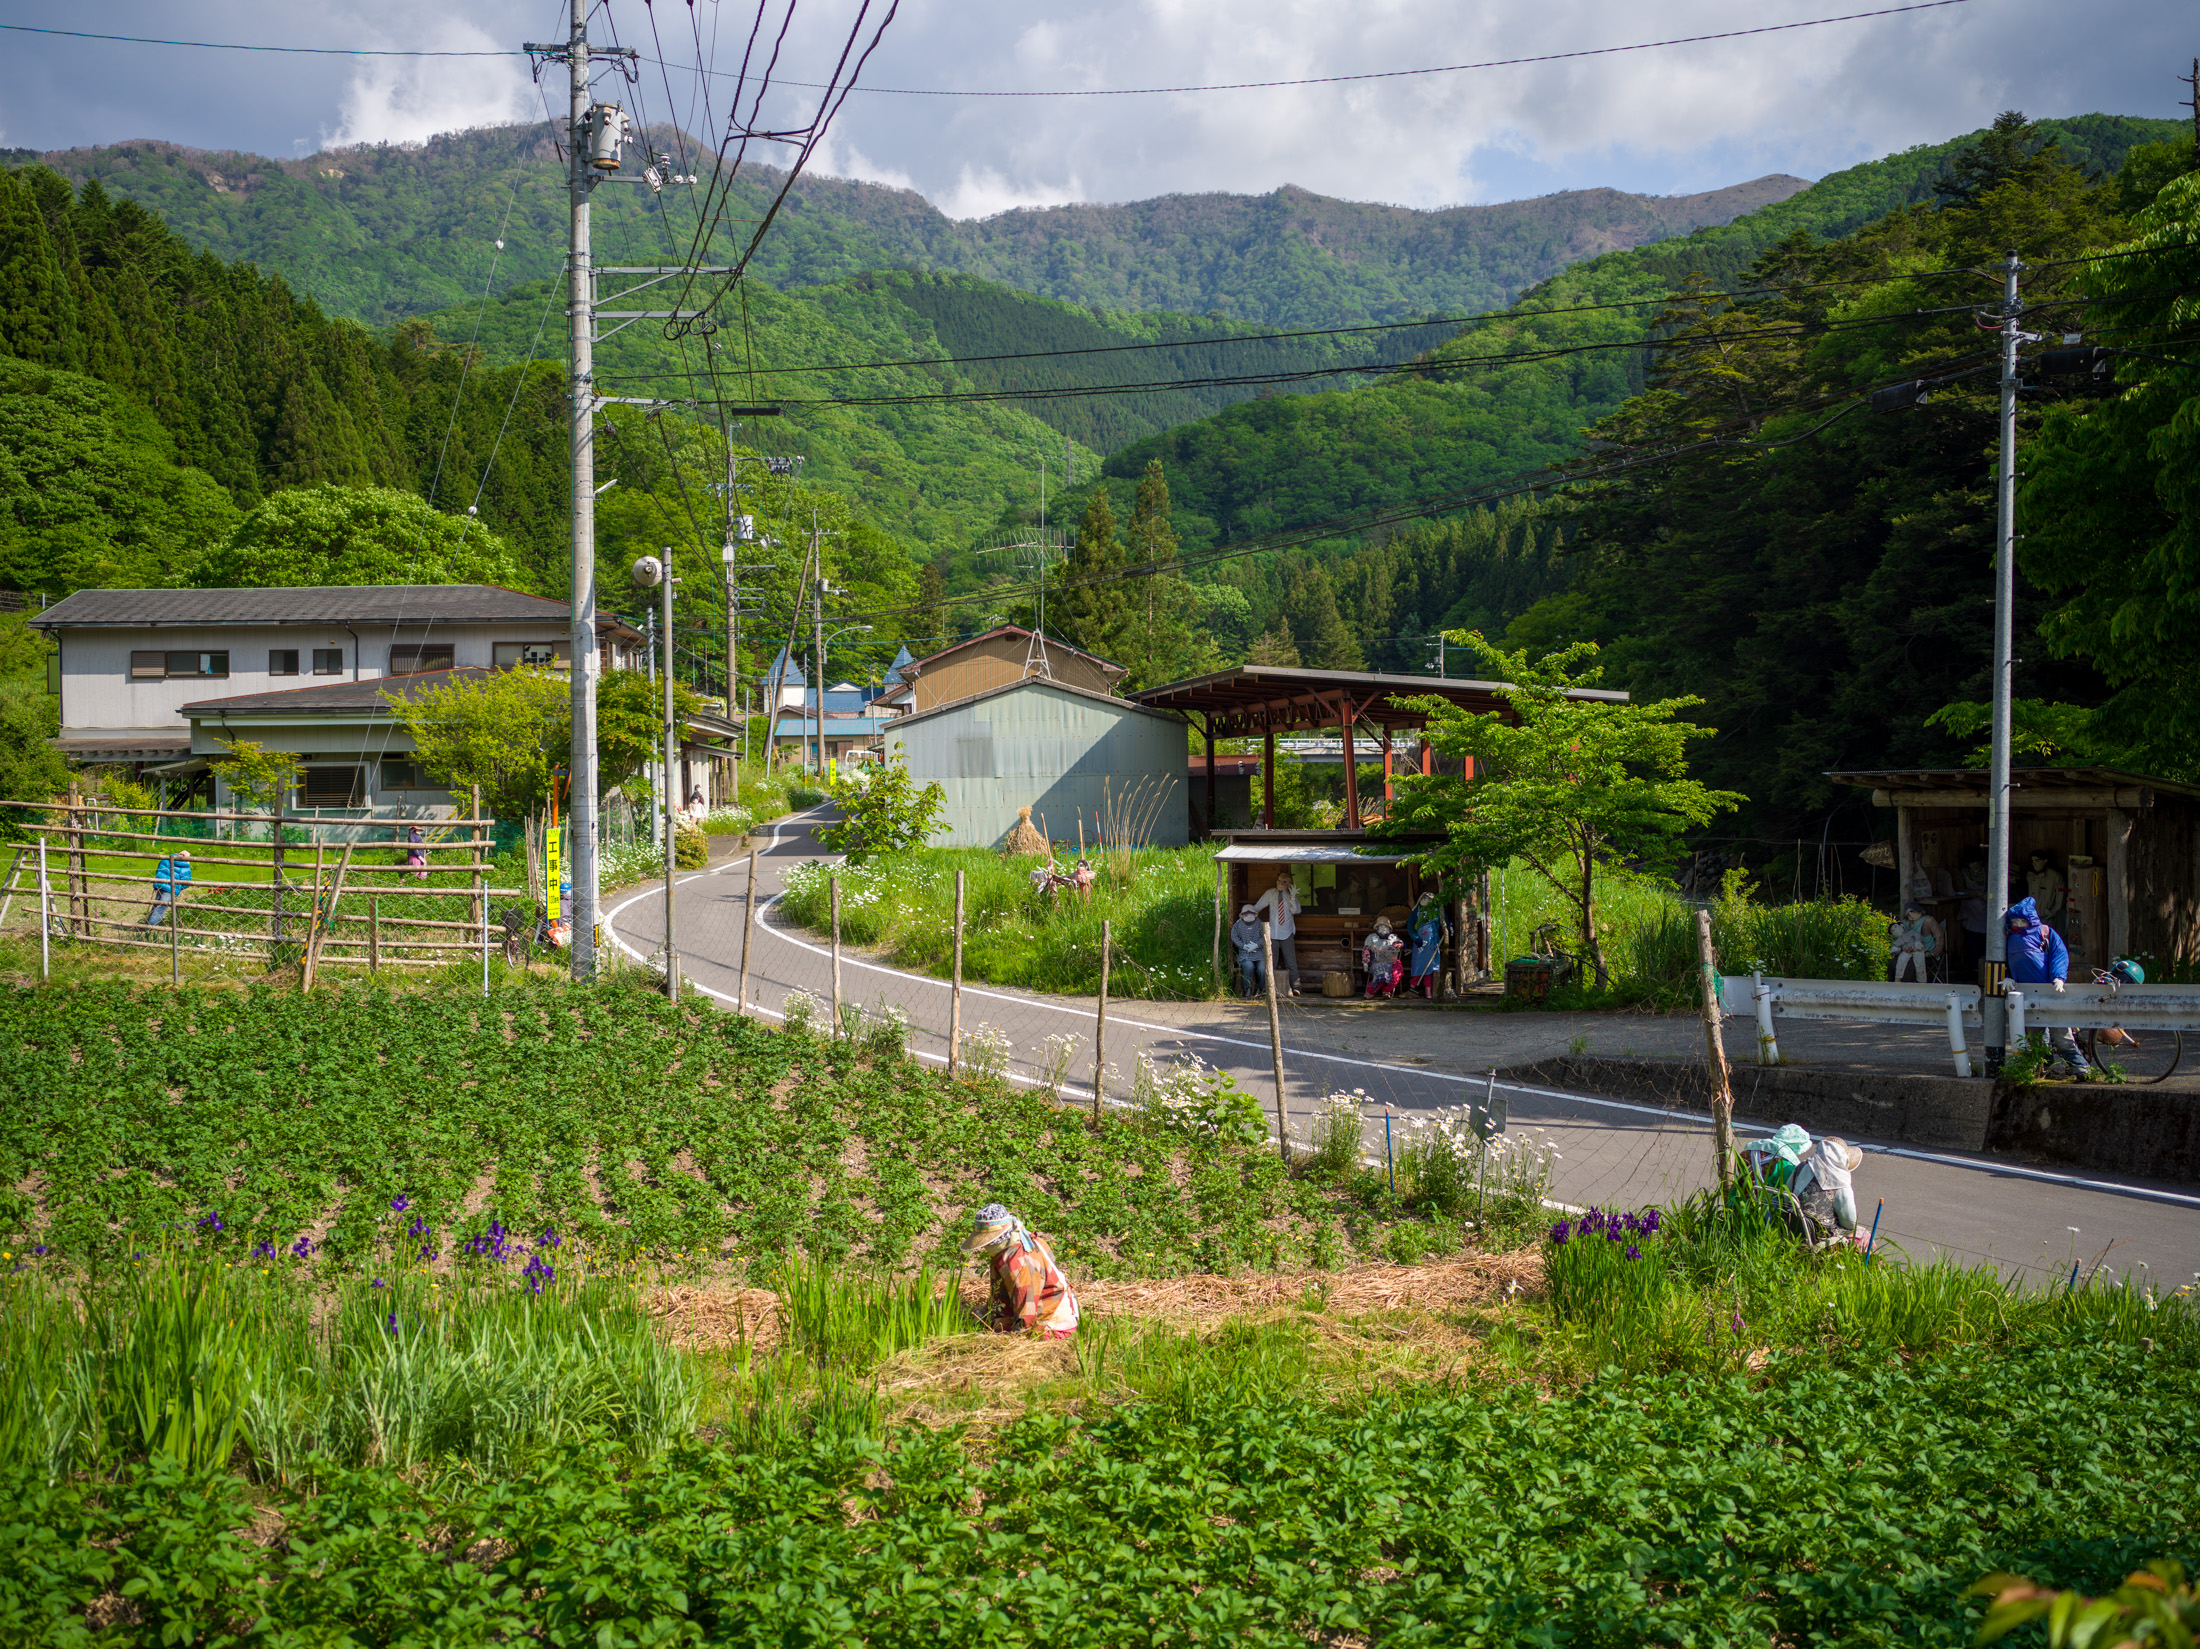 Nagoro Village